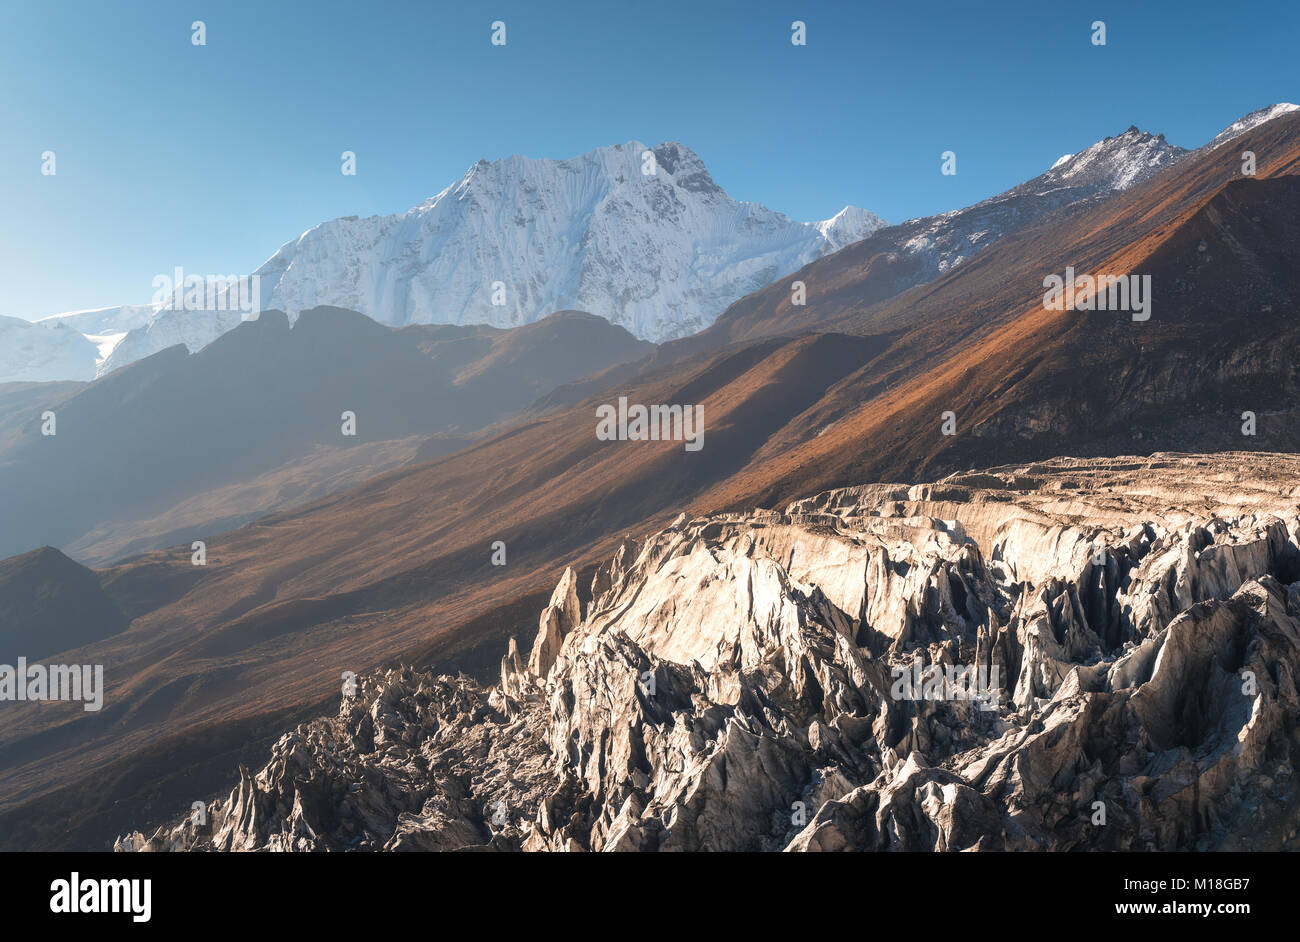 Belle vue sur la montagne couverte de neige sur fond de ciel bleu au lever du soleil au Népal. Paysage avec des sommets enneigés des montagnes de l'Himalaya, des glaciers, des rochers, des collines Banque D'Images